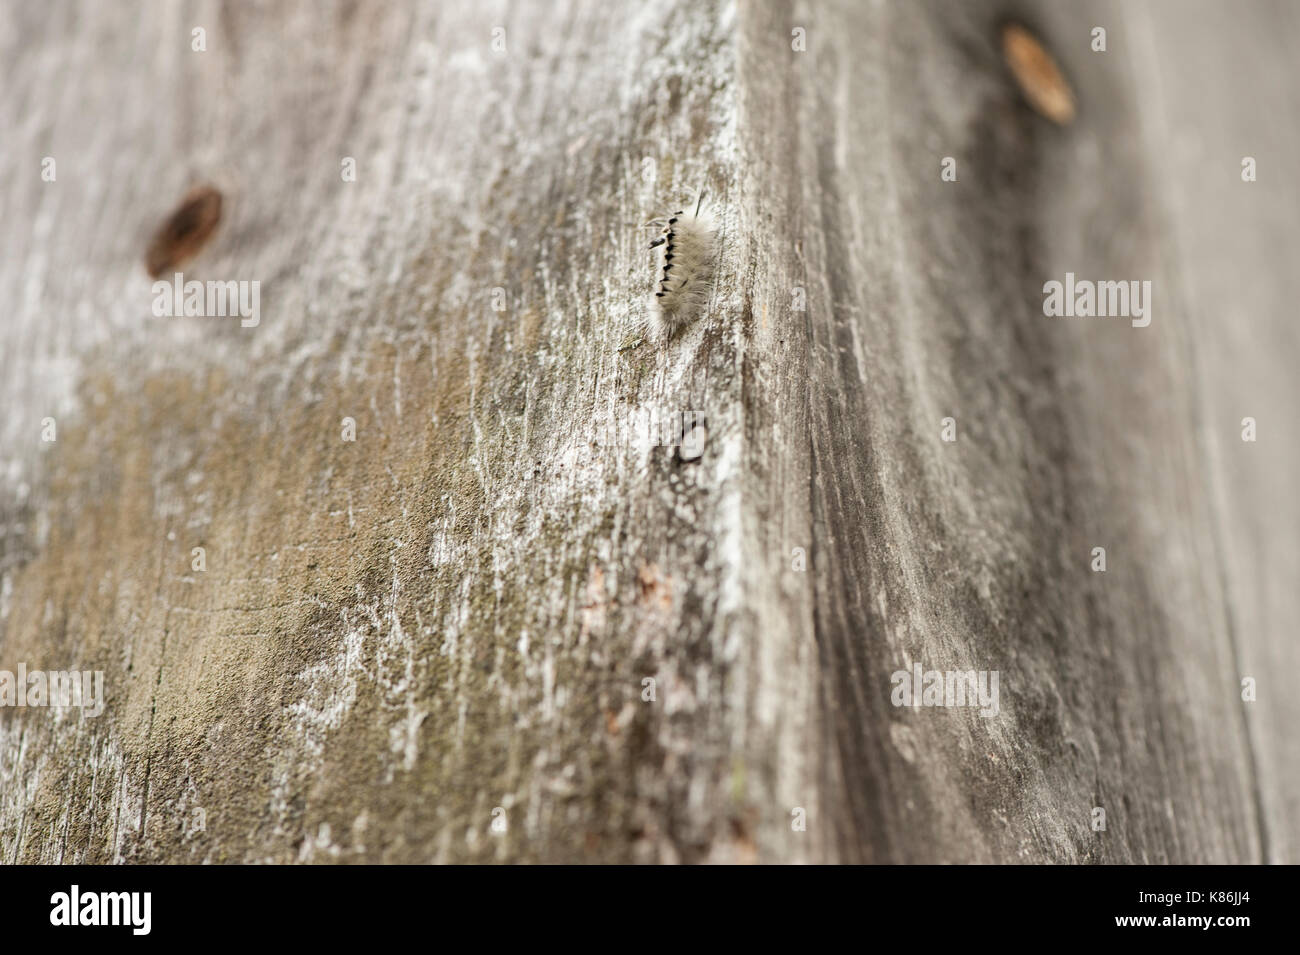 Hickory tussock caterpillar si inerpica su per la parete di un vecchio mulino Foto Stock